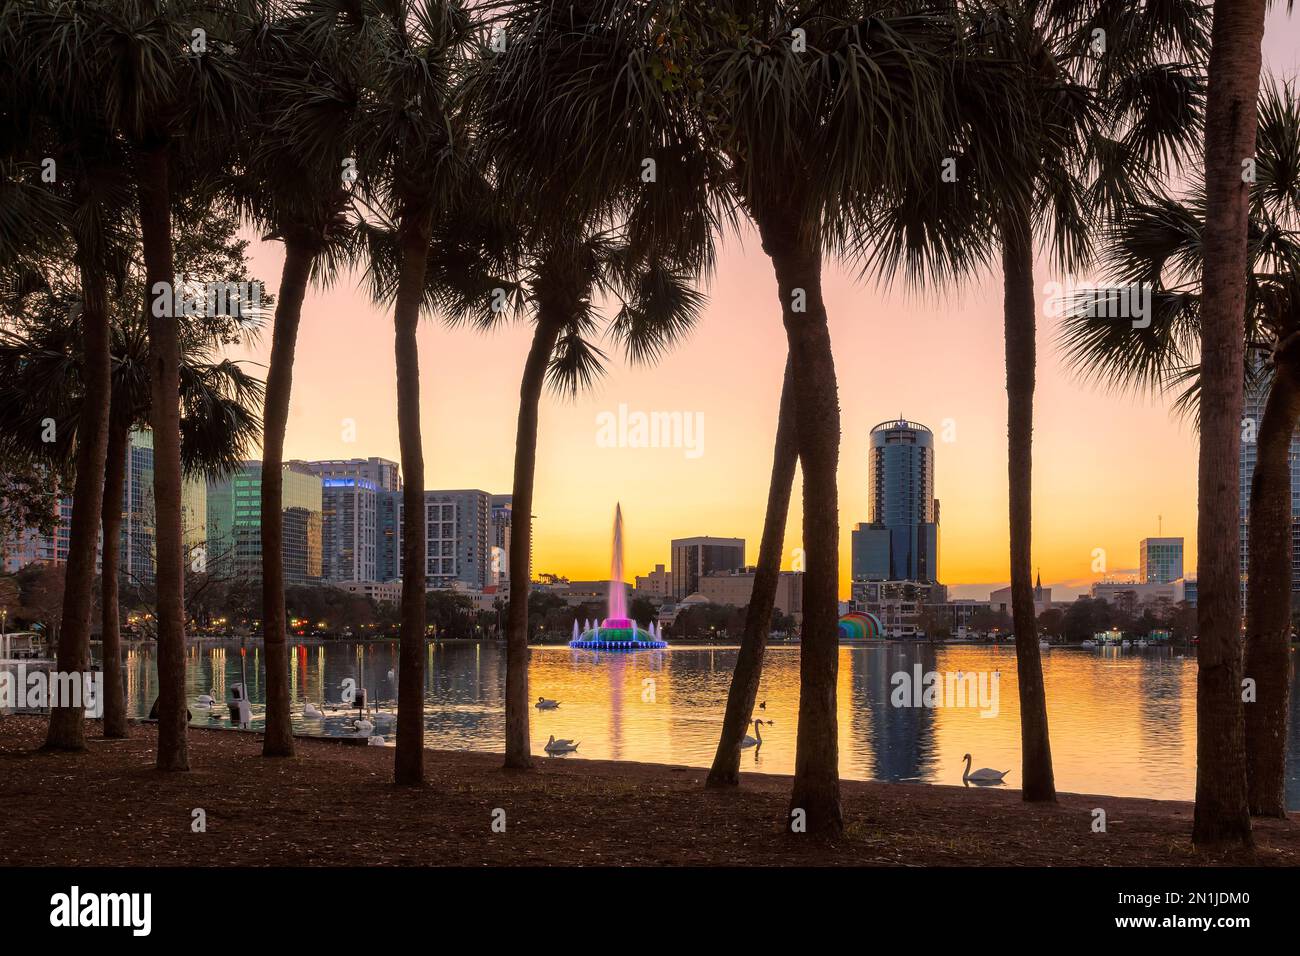 Palmiers au coucher du soleil dans le parc du lac Eola avec fontaine dans la ville d'Orlando, Floride, États-Unis. Banque D'Images